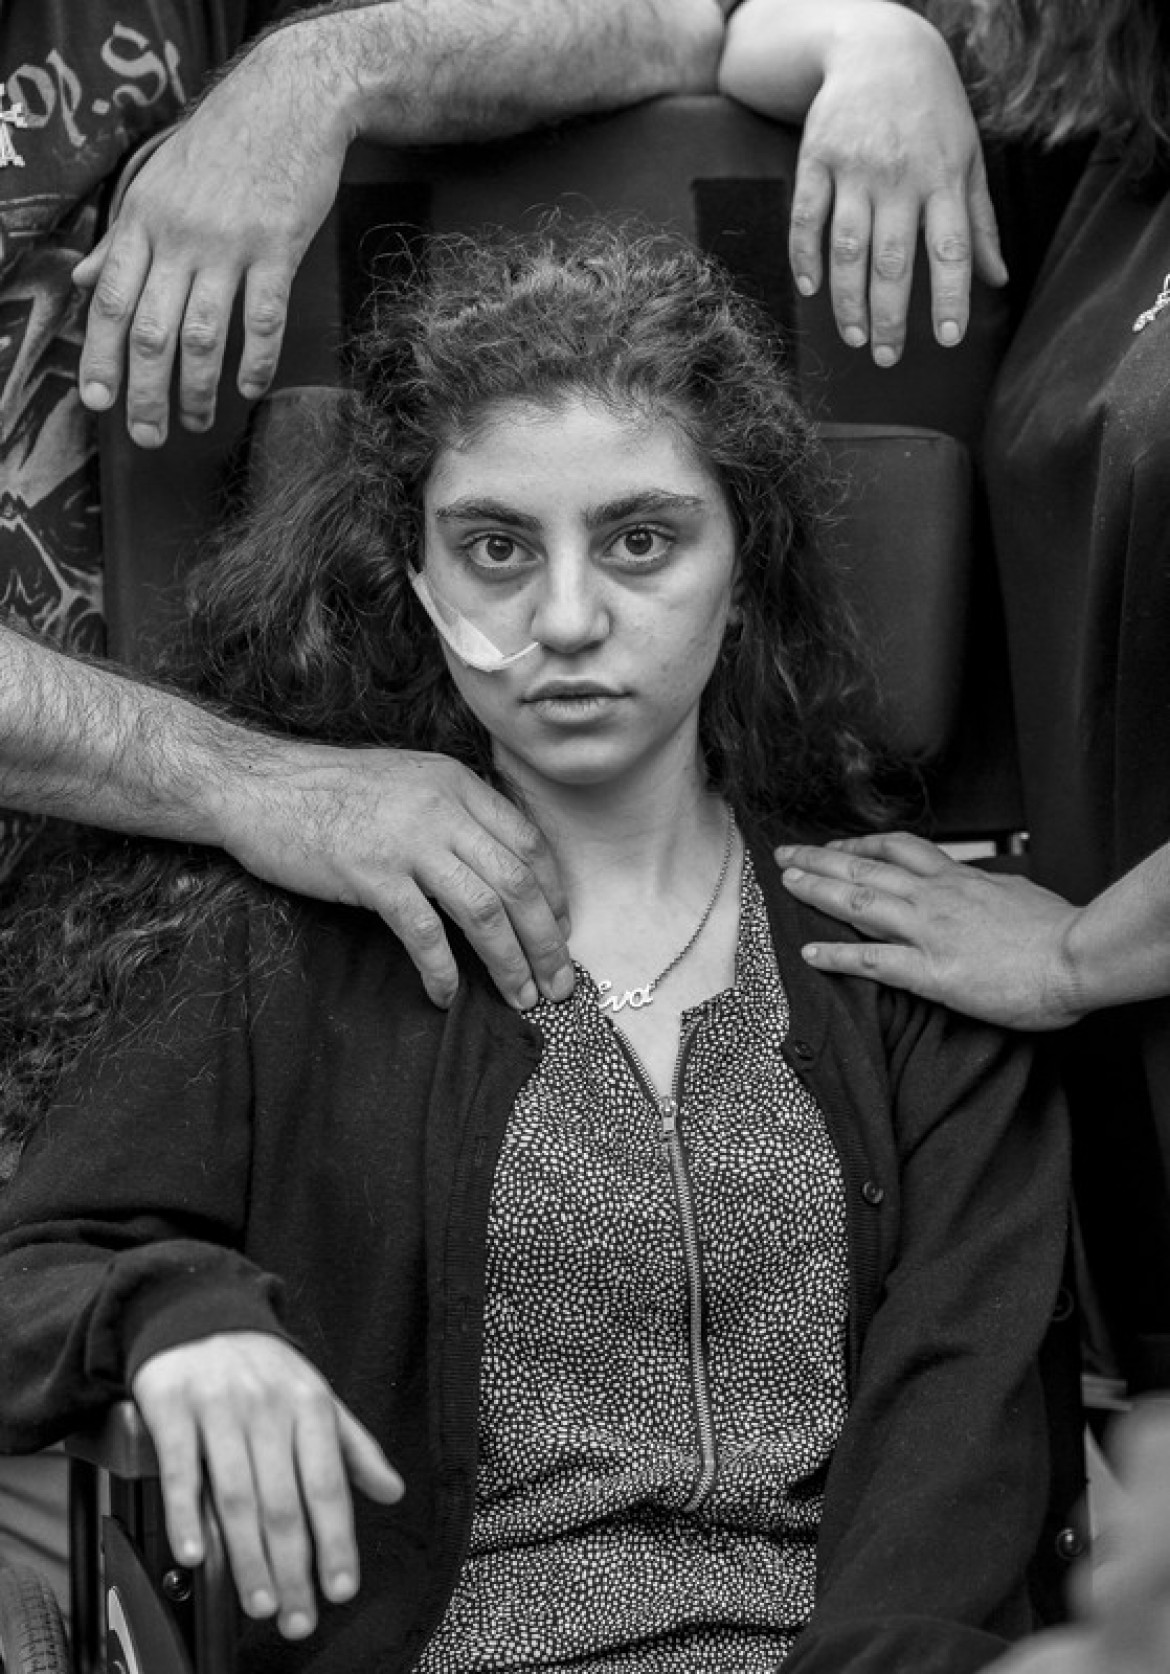 fot. Tomasz Kaczor, dla "Dużego Formatu", 1. miejsce w kategorii Portret. Ewa, 15-letnia Ormianka obudziła się po ośmiu miesiącach katatonii wywołanej przez syndrom rezygnacji. Siedzi na wózku inwalidzkim otoczona ramionami rodziców. Wciąż grozi im deportacja do Armenii.